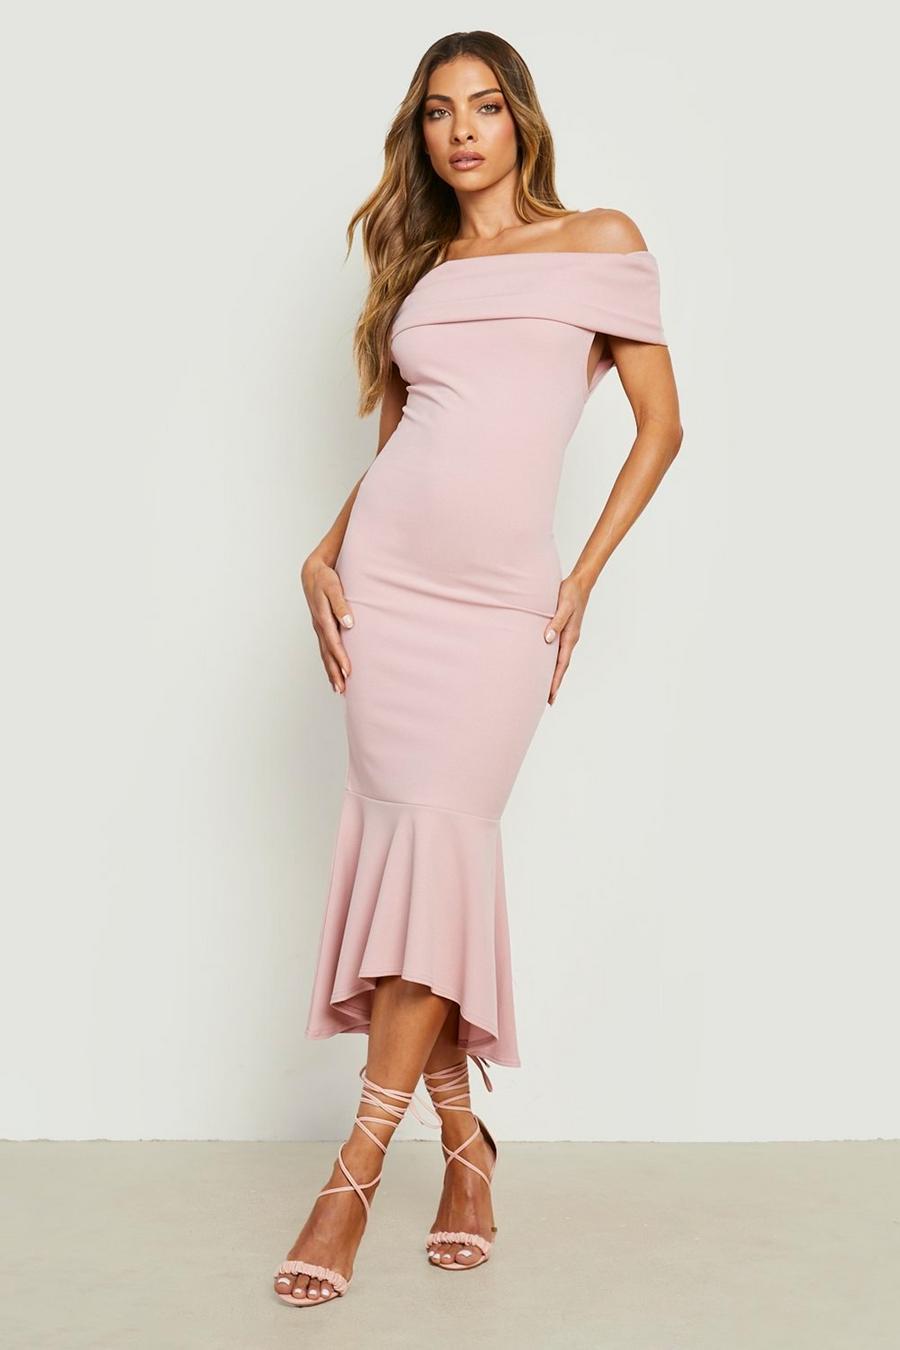 Blush pink Off The Shoulder Peplum Midaxi Dress